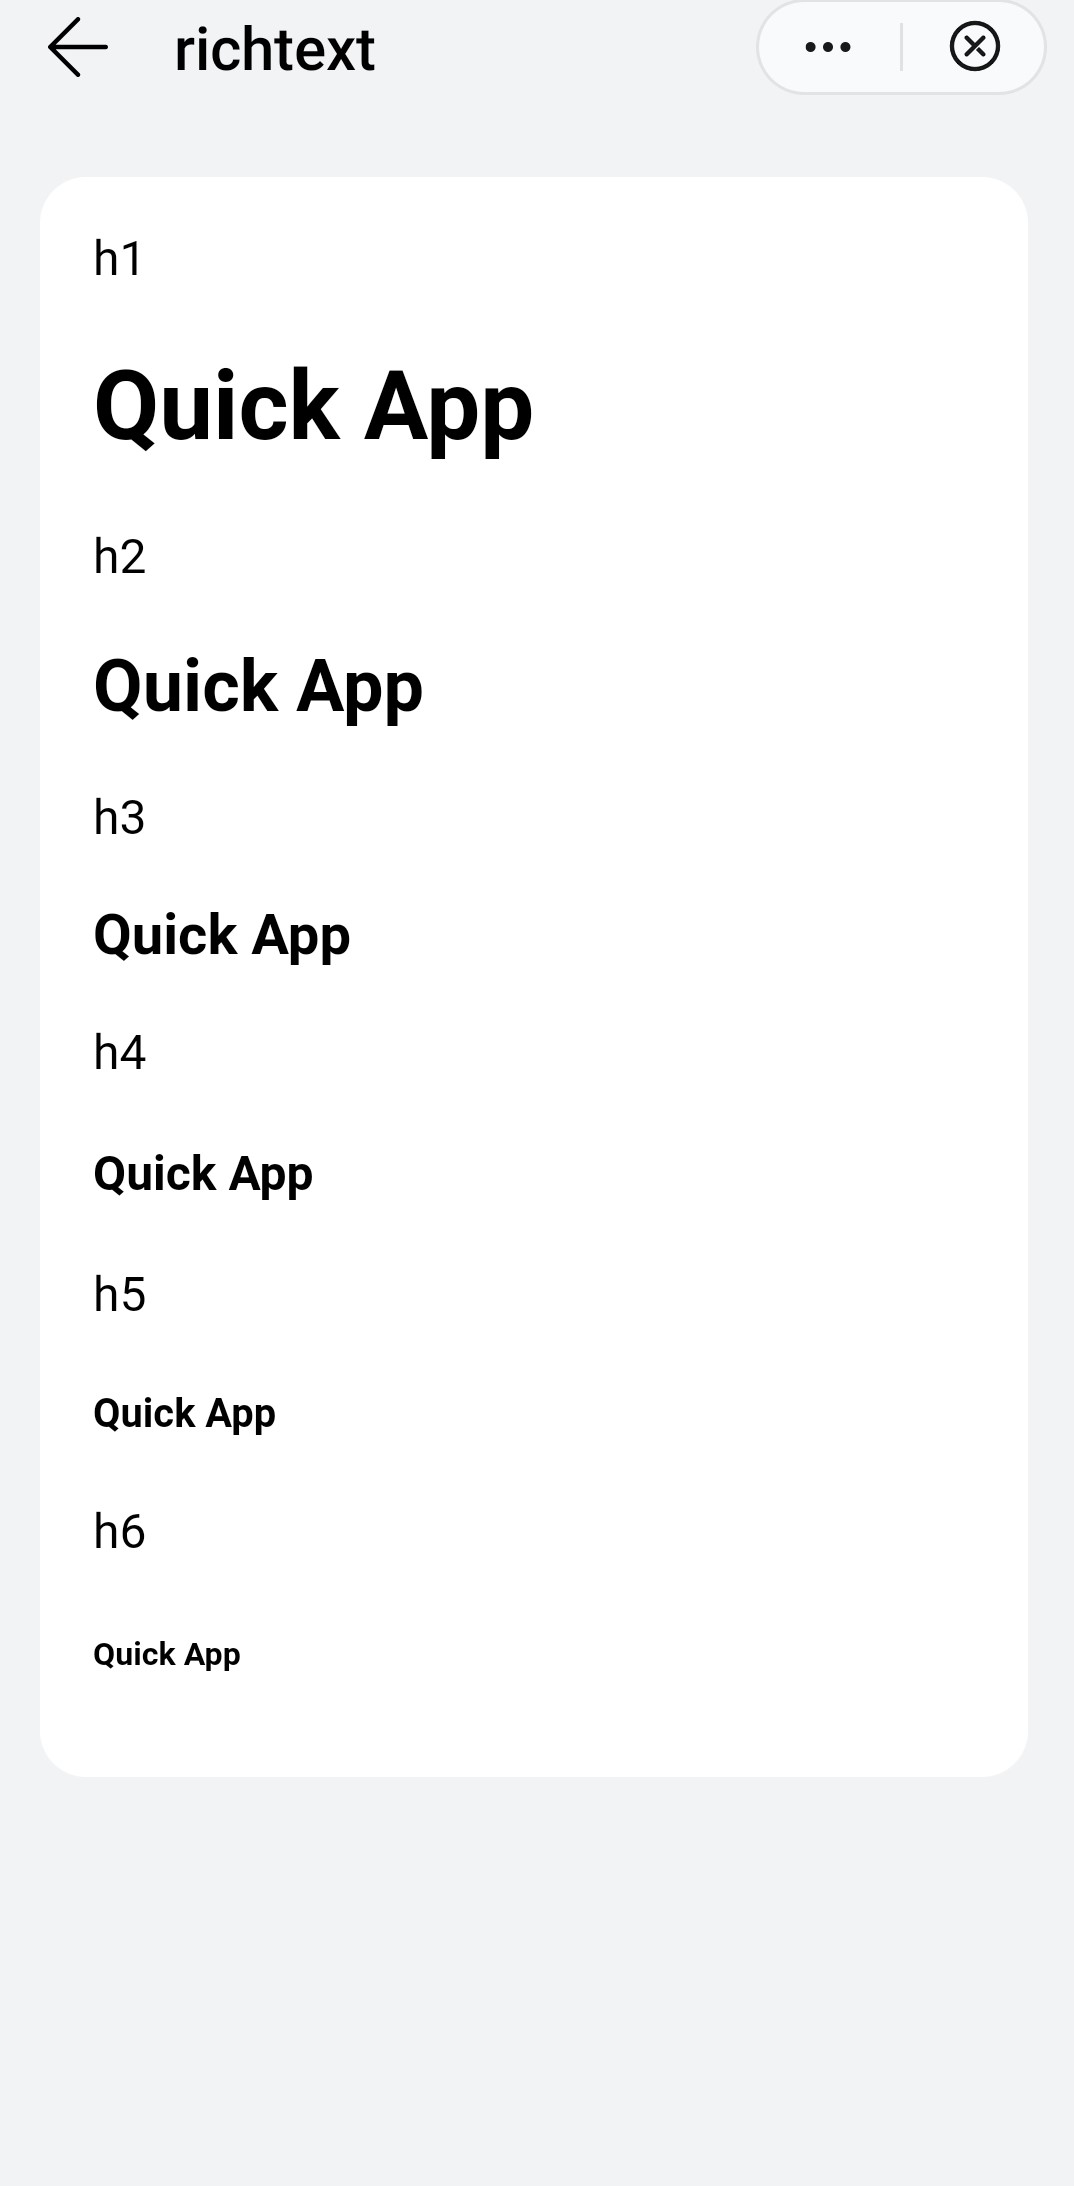 Richtext on a Quick App